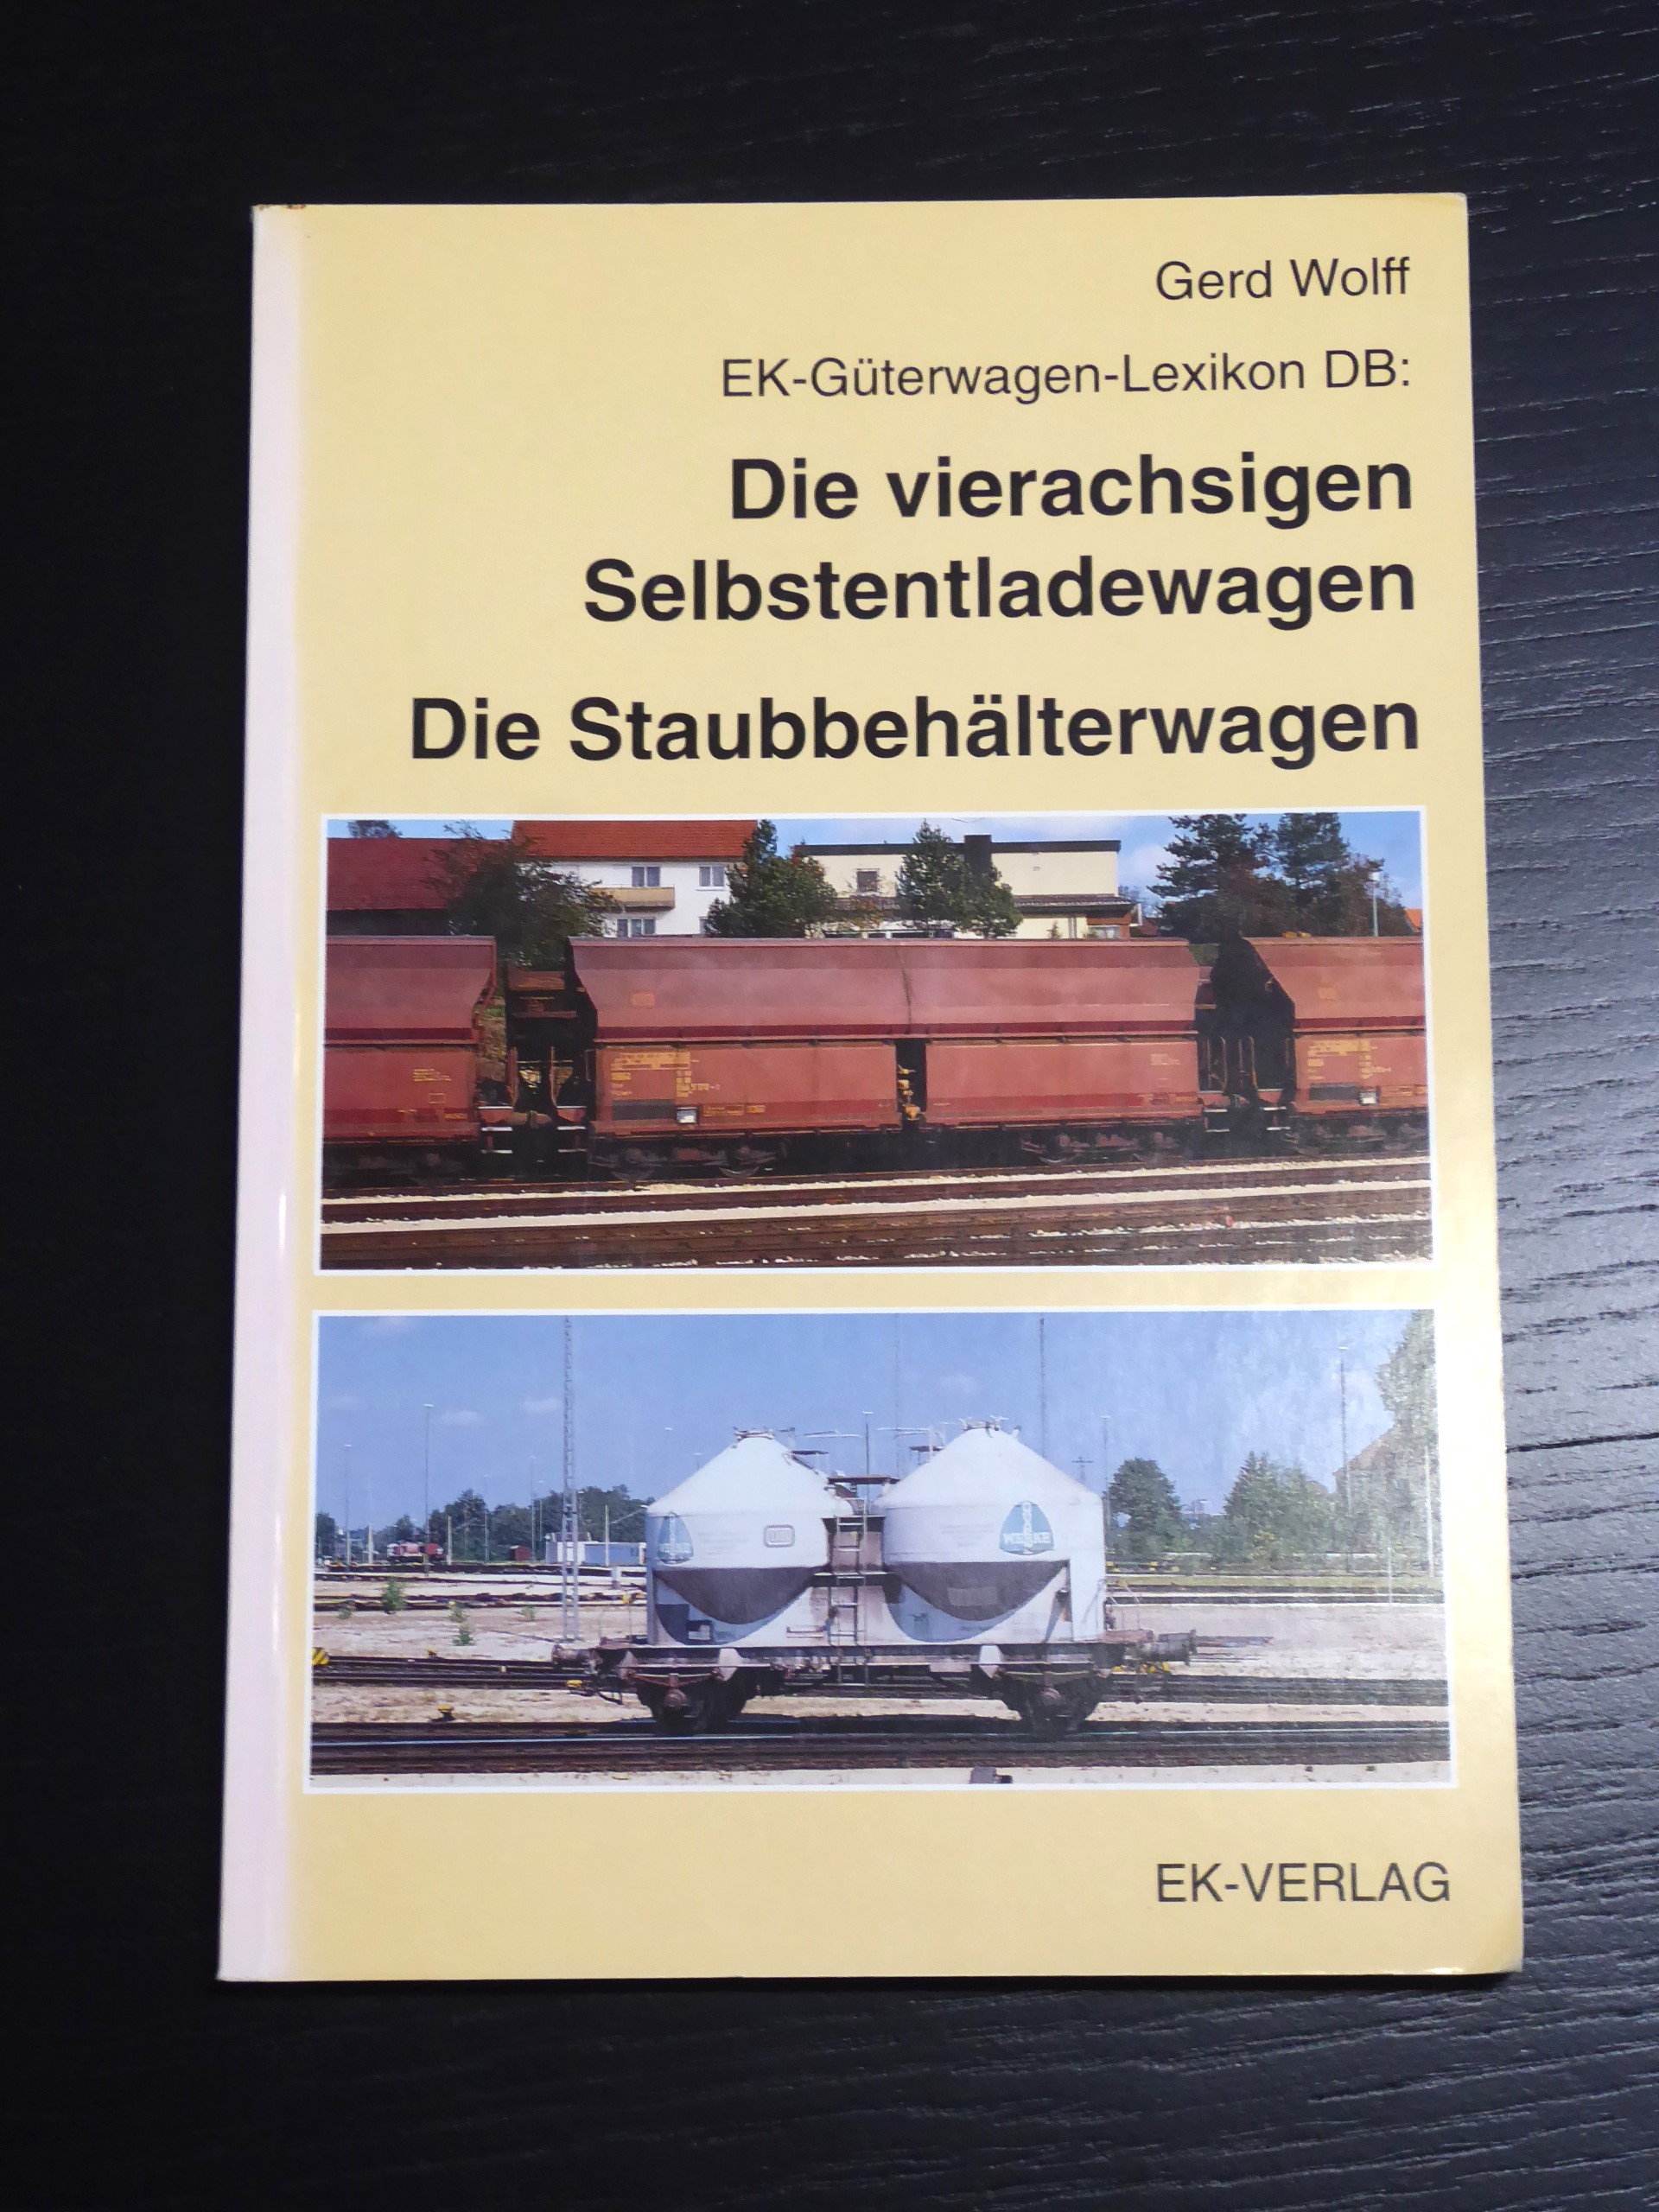 EK-Güterwagen-Lexikon DB, Die vierachsigen Selbstentladewagen: BD 4 - Wolff, Gerd